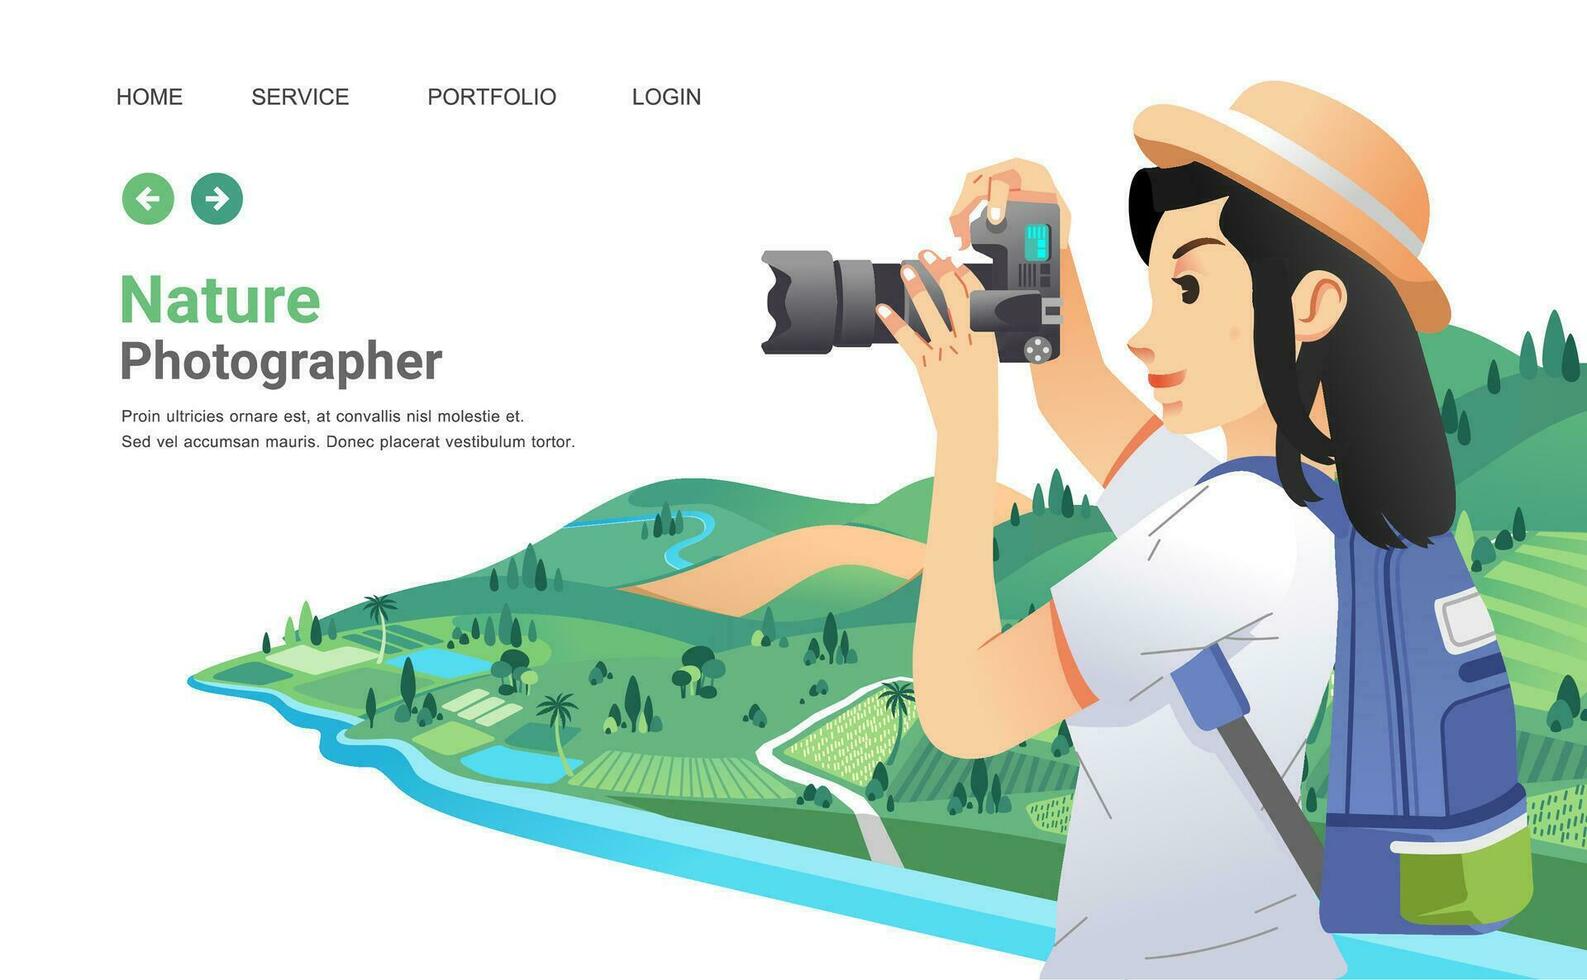 jung Mädchen nehmen ein Bild von schön ländlich Landschaft mit Digital Kamera, das Mädchen tragen Hut und bringen Rucksack. Landschaft wie Hintergrund vektor